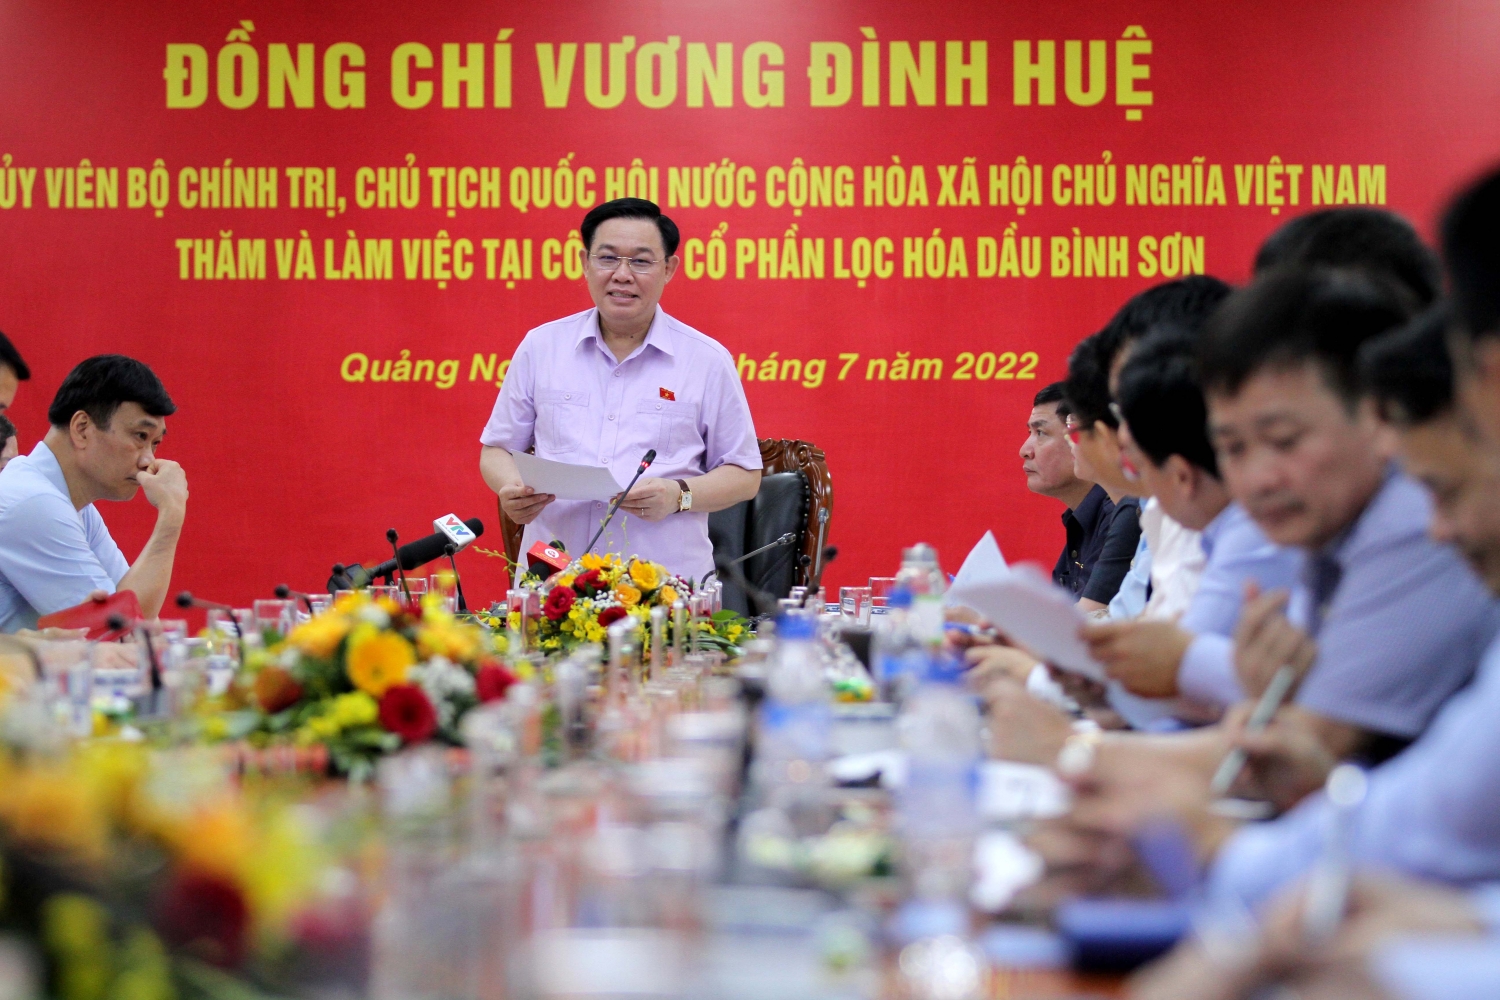 Chủ tịch Quốc hội Vương Đình Huệ: BSR đặt nền móng cho sự phát triển ngành lọc hóa dầu Việt Nam”